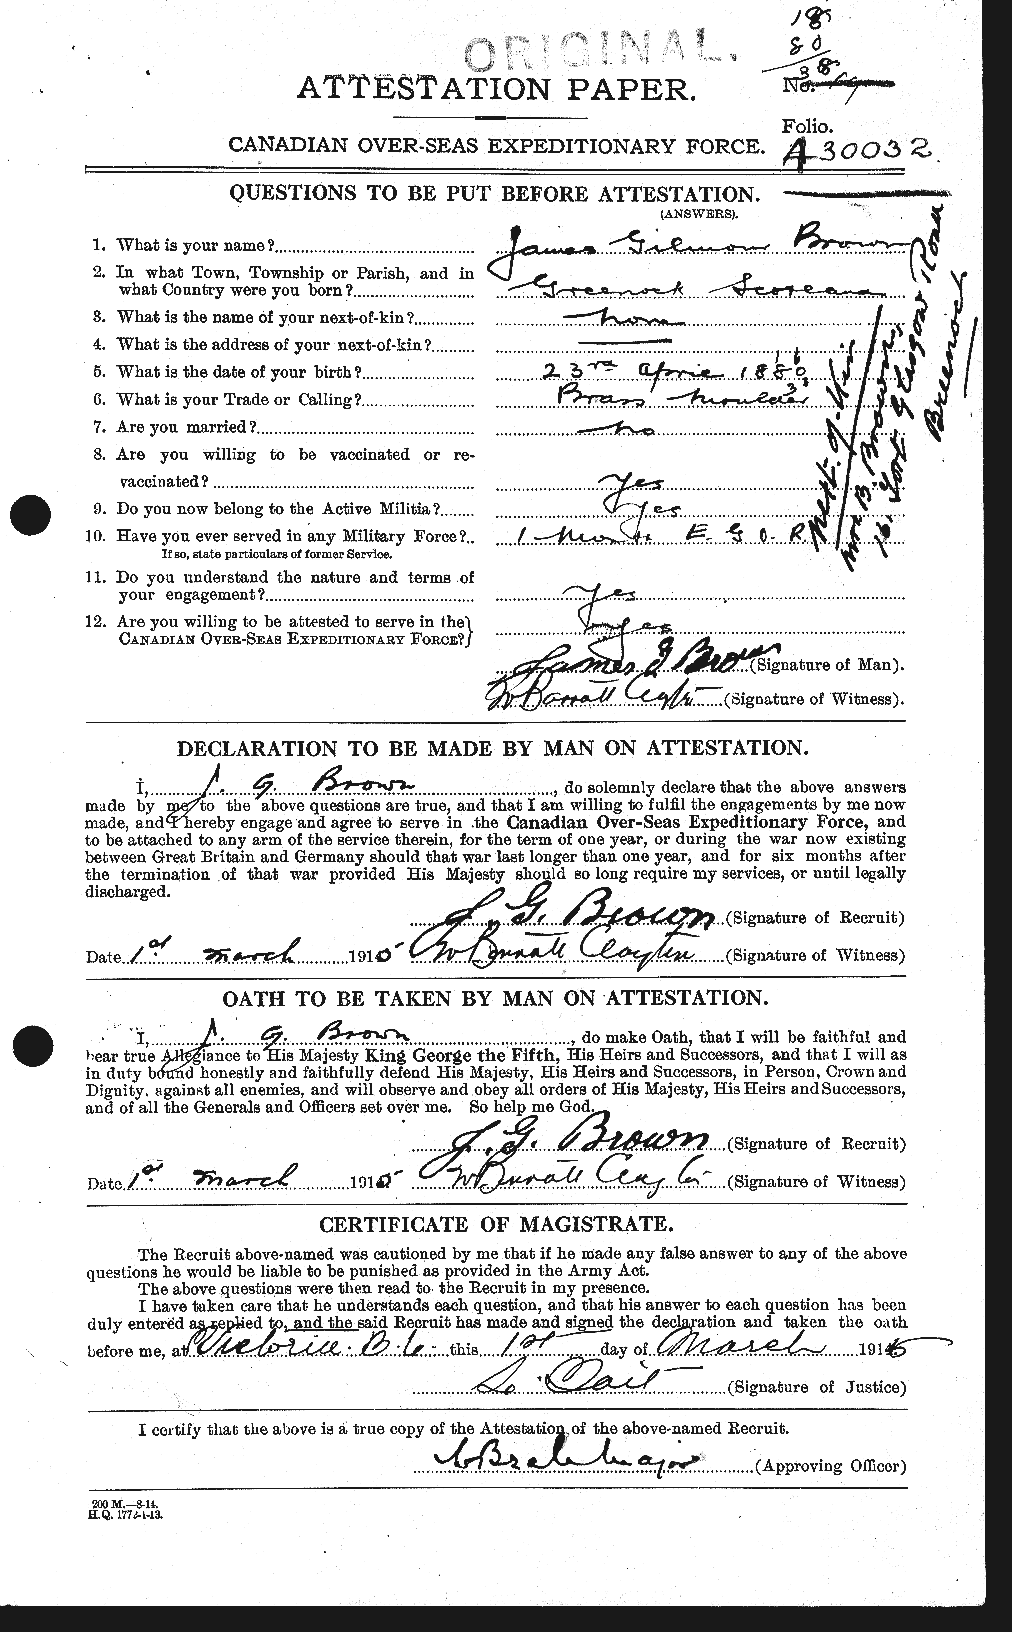 Dossiers du Personnel de la Première Guerre mondiale - CEC 269535a